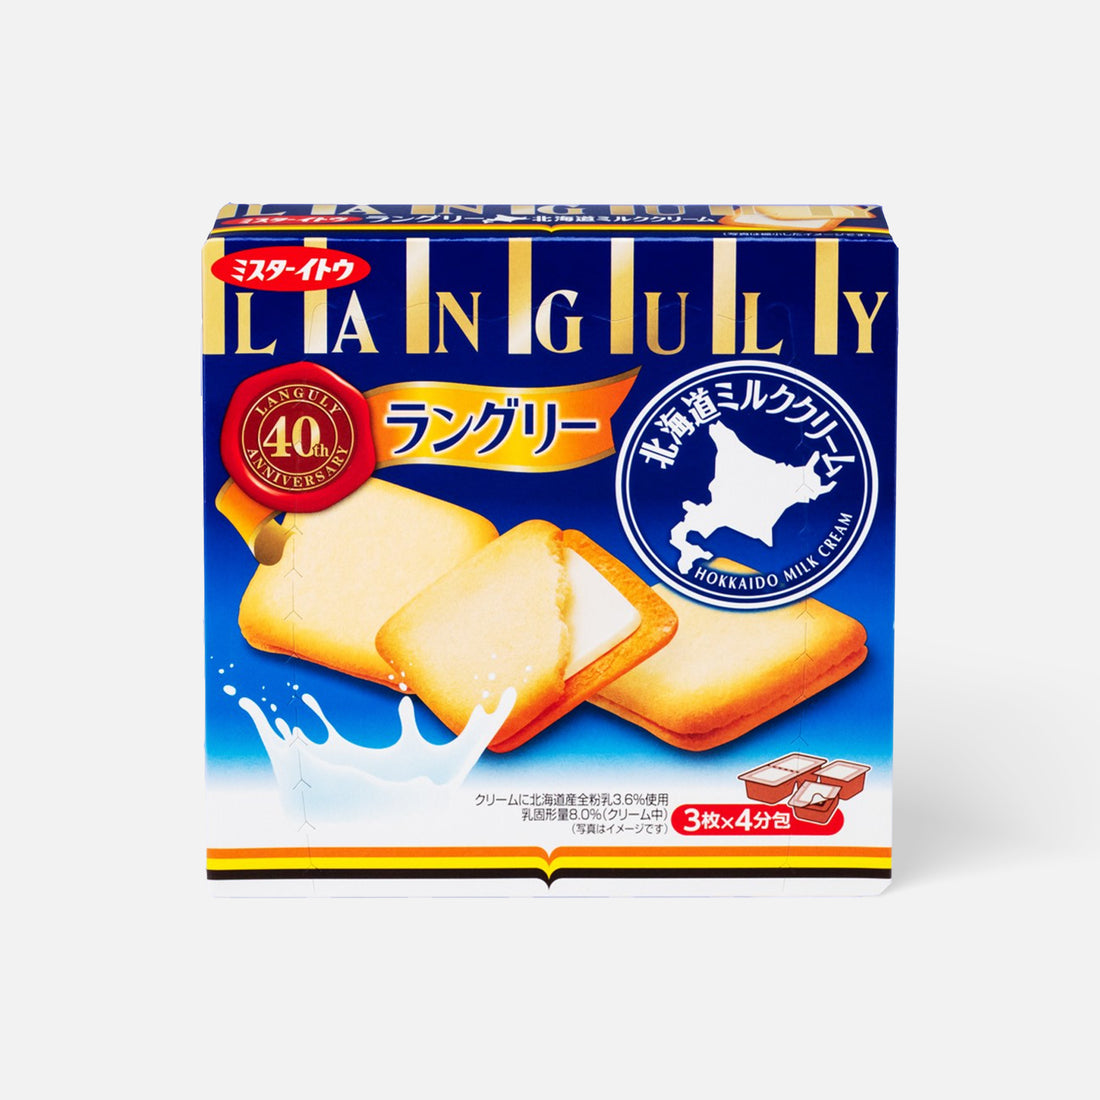 MR.ITO Languly Hokkaido Milk 12pcs